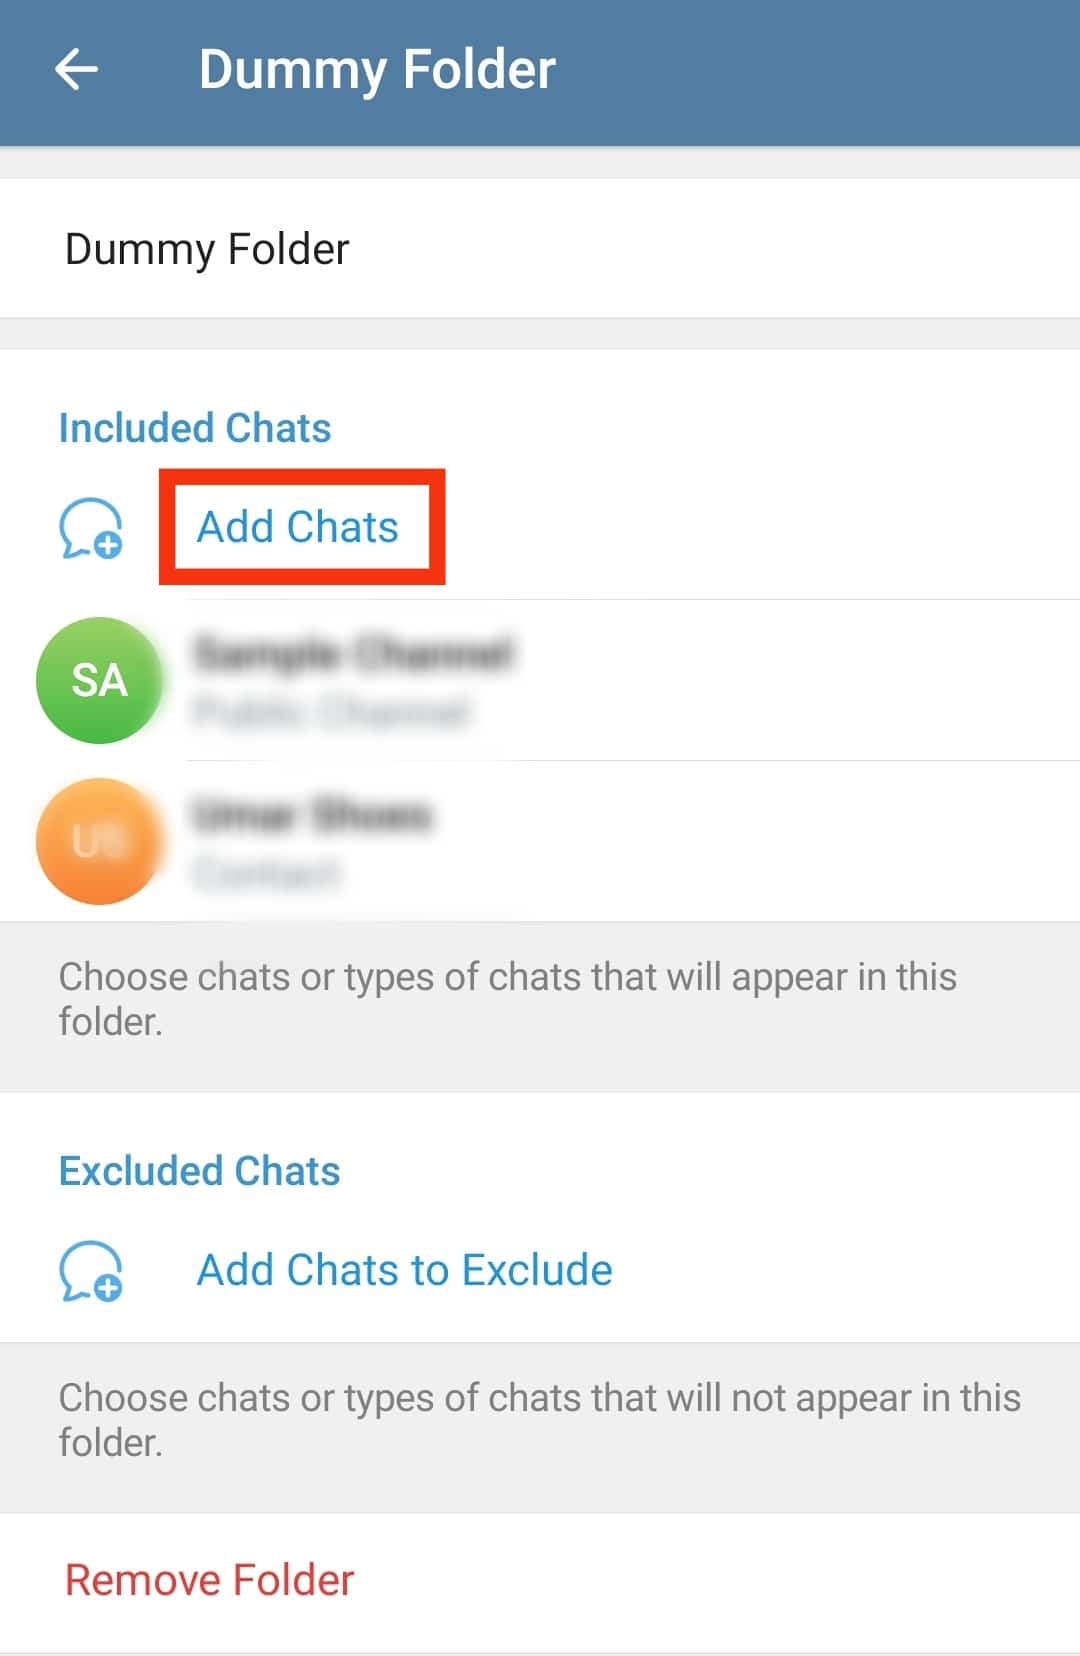 Select Add Chats